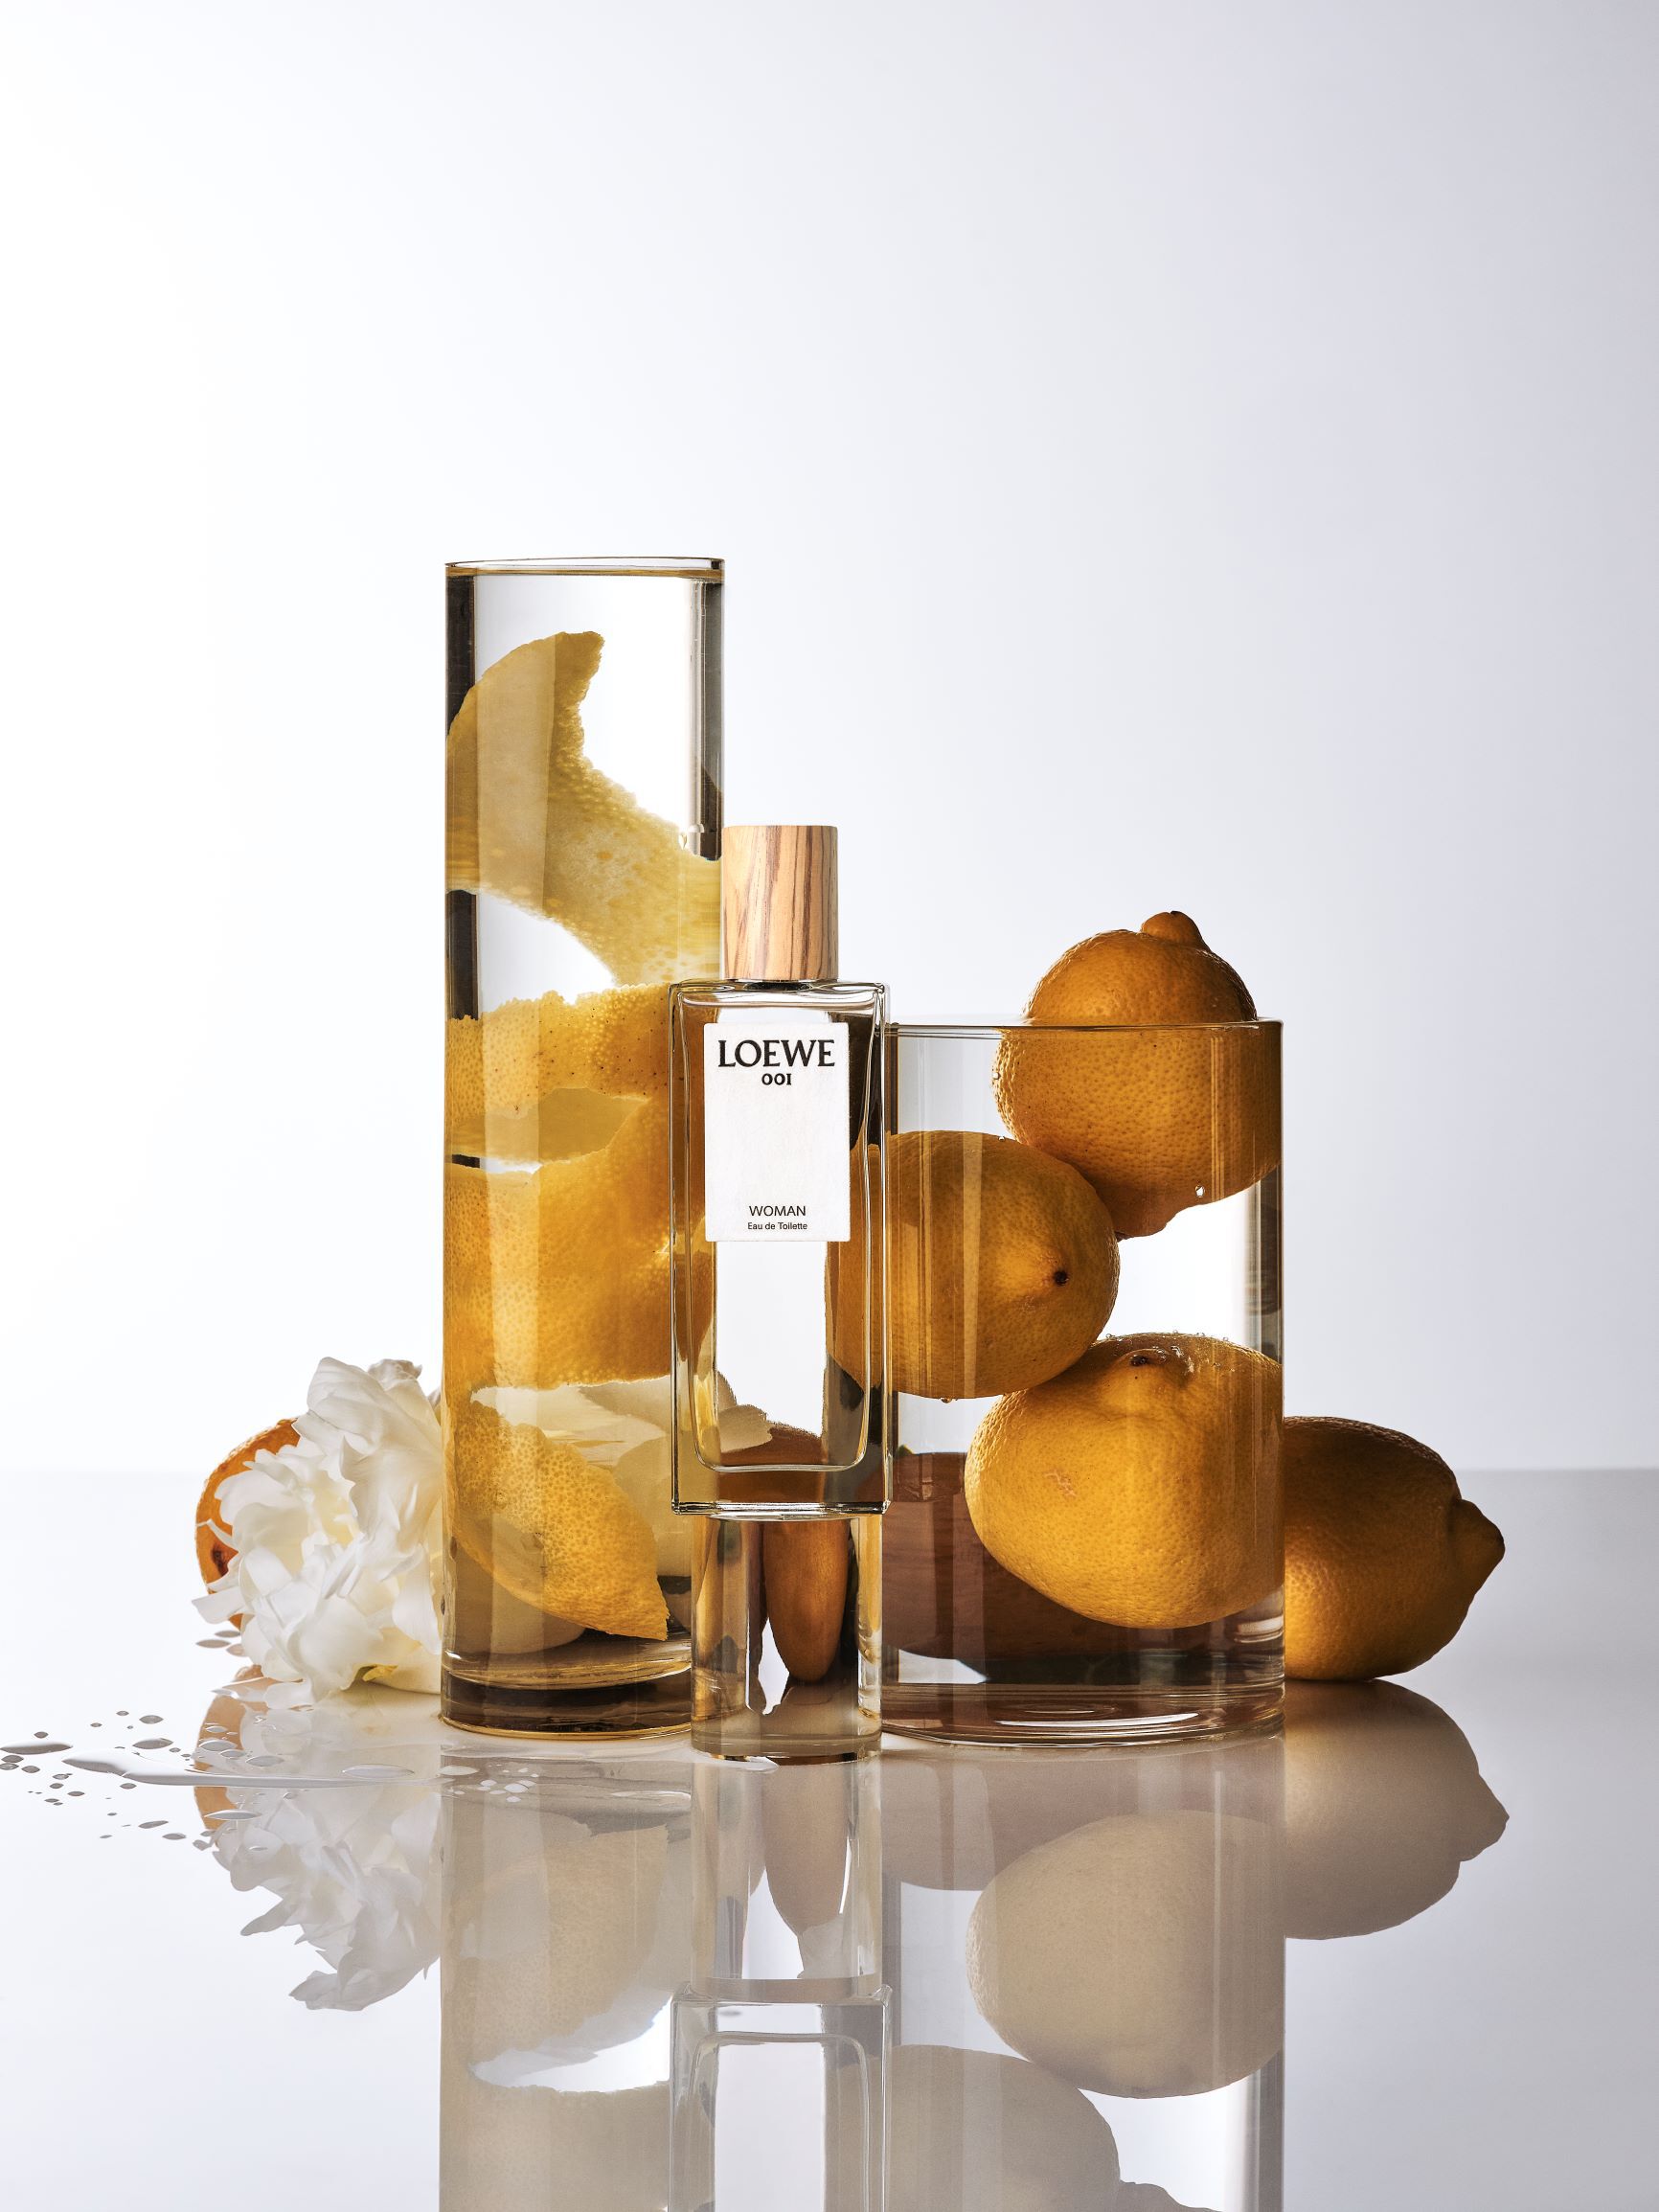 loewe 001 parfum